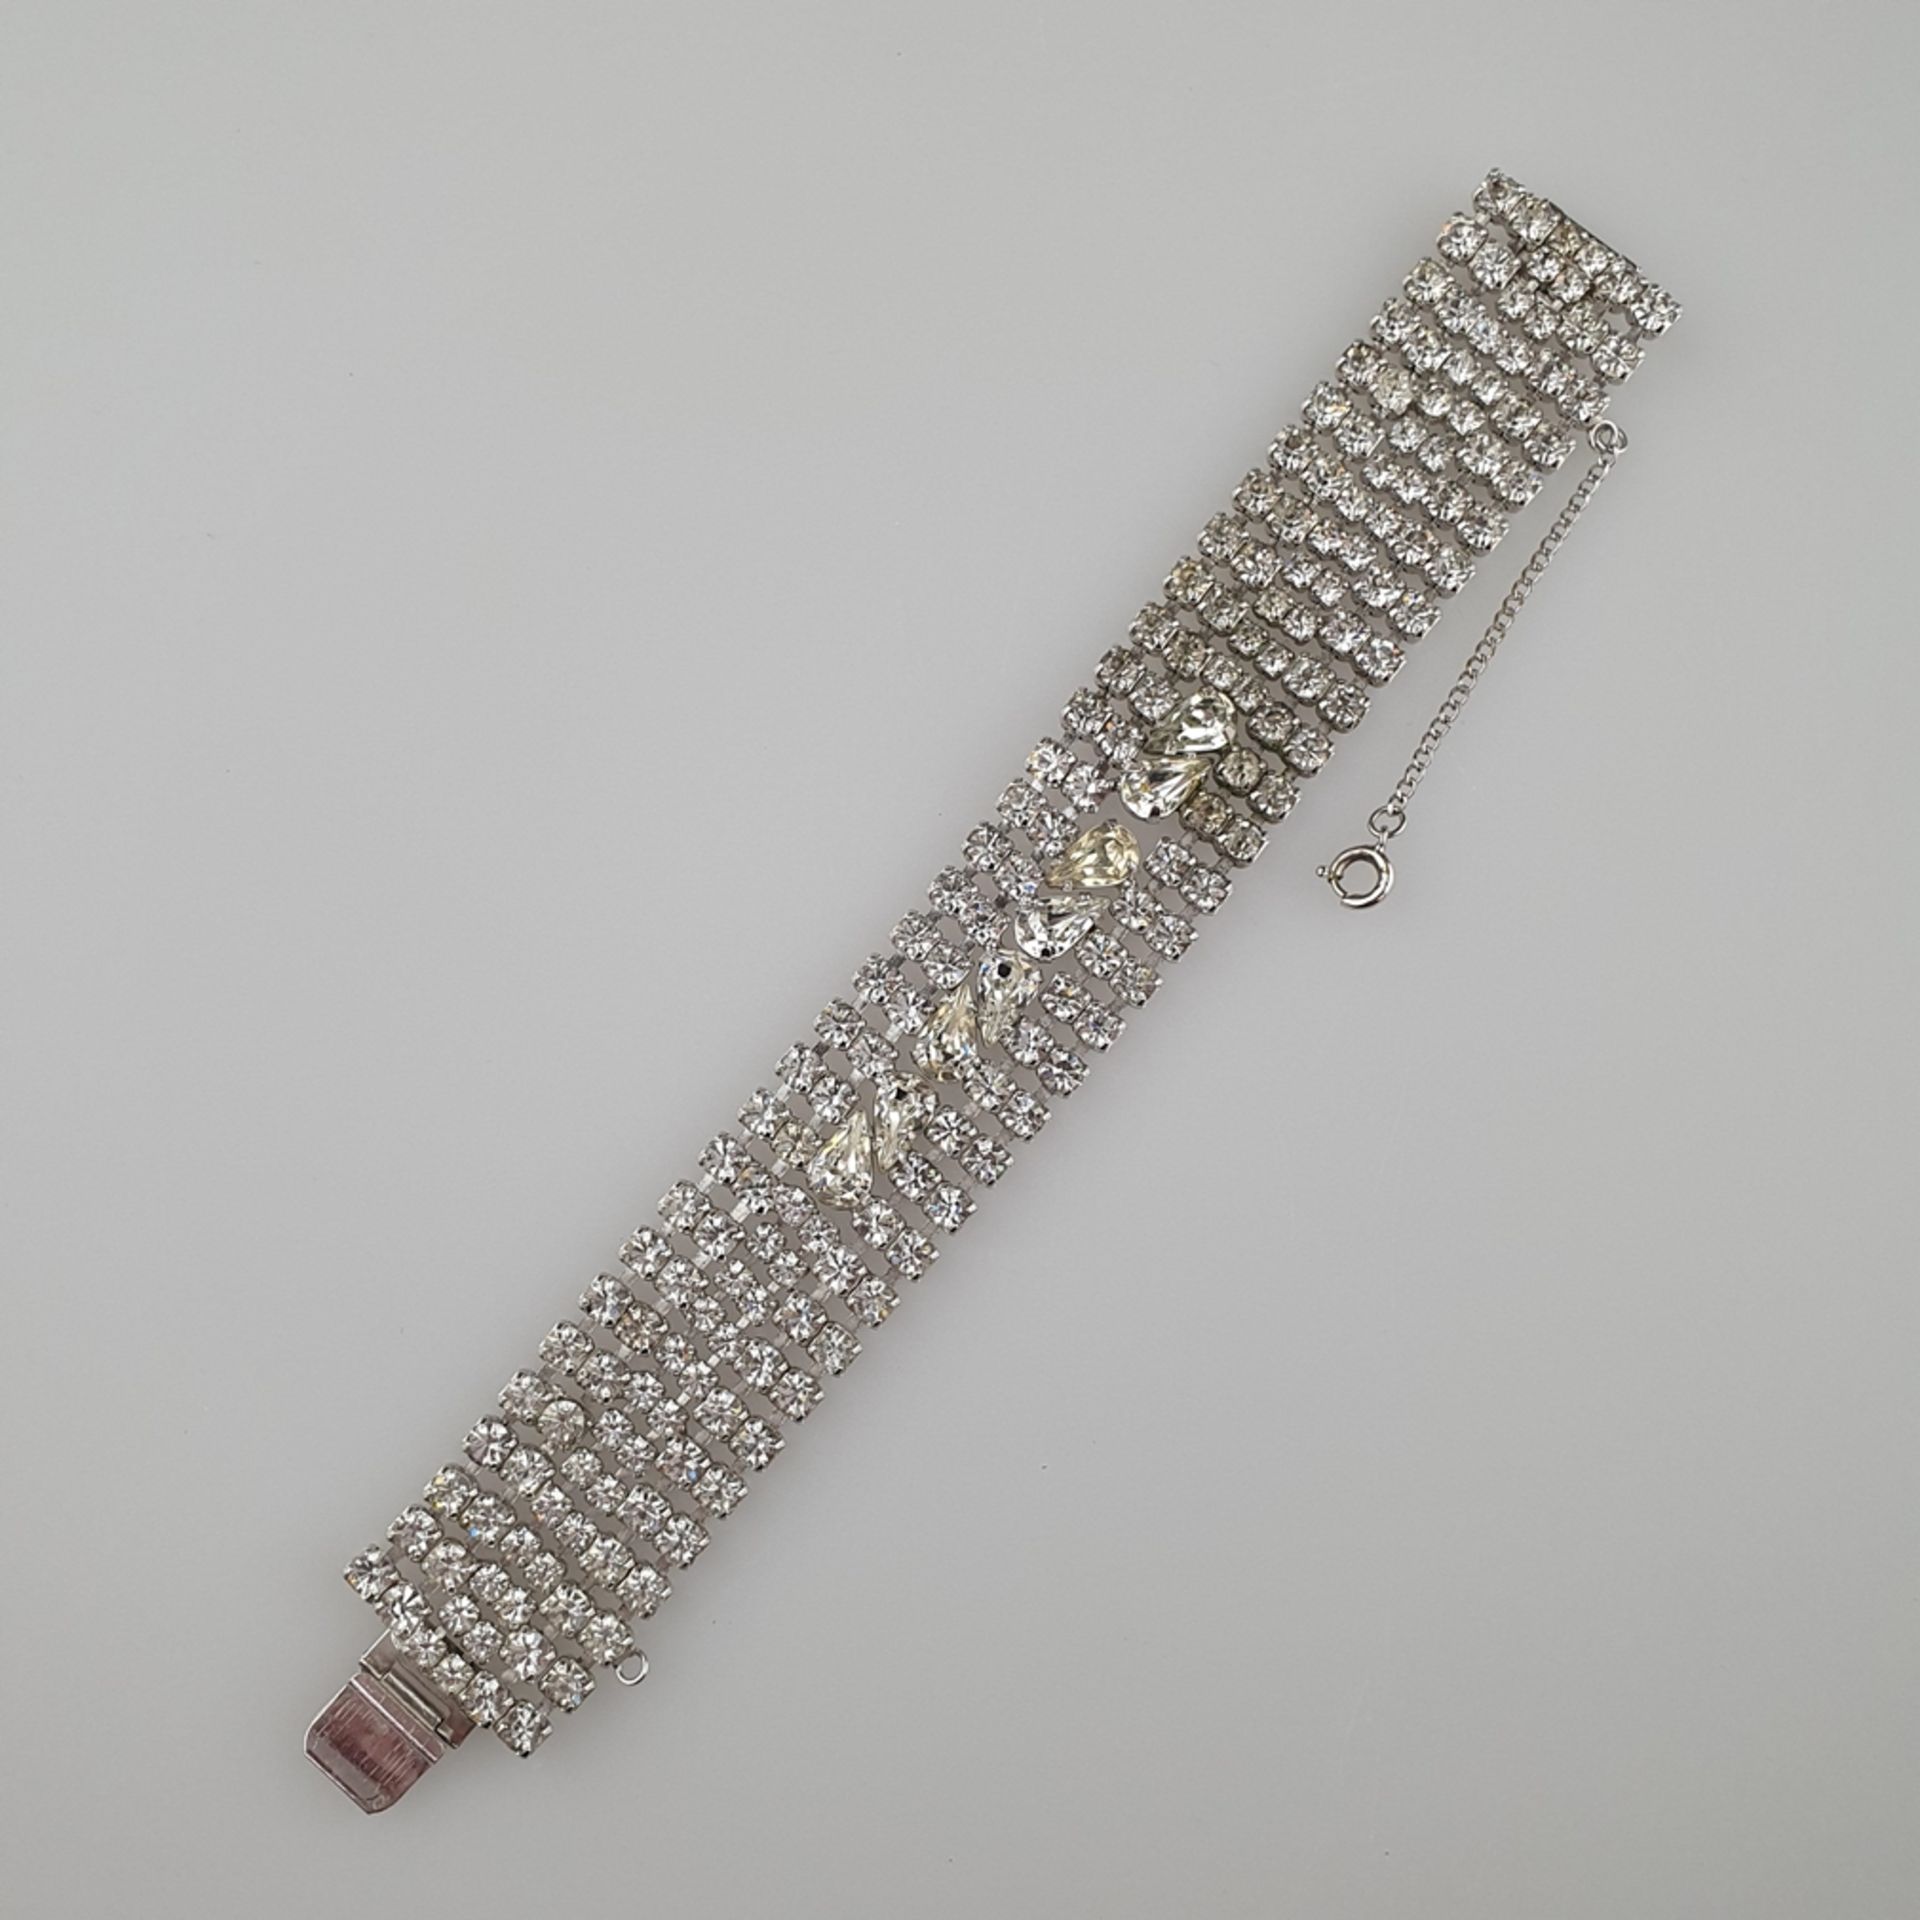 Art-Déco-Armband in Diamant-Optik - WEISS / USA, vor 1955, silberfarbenes Metall, mit geschliffenen